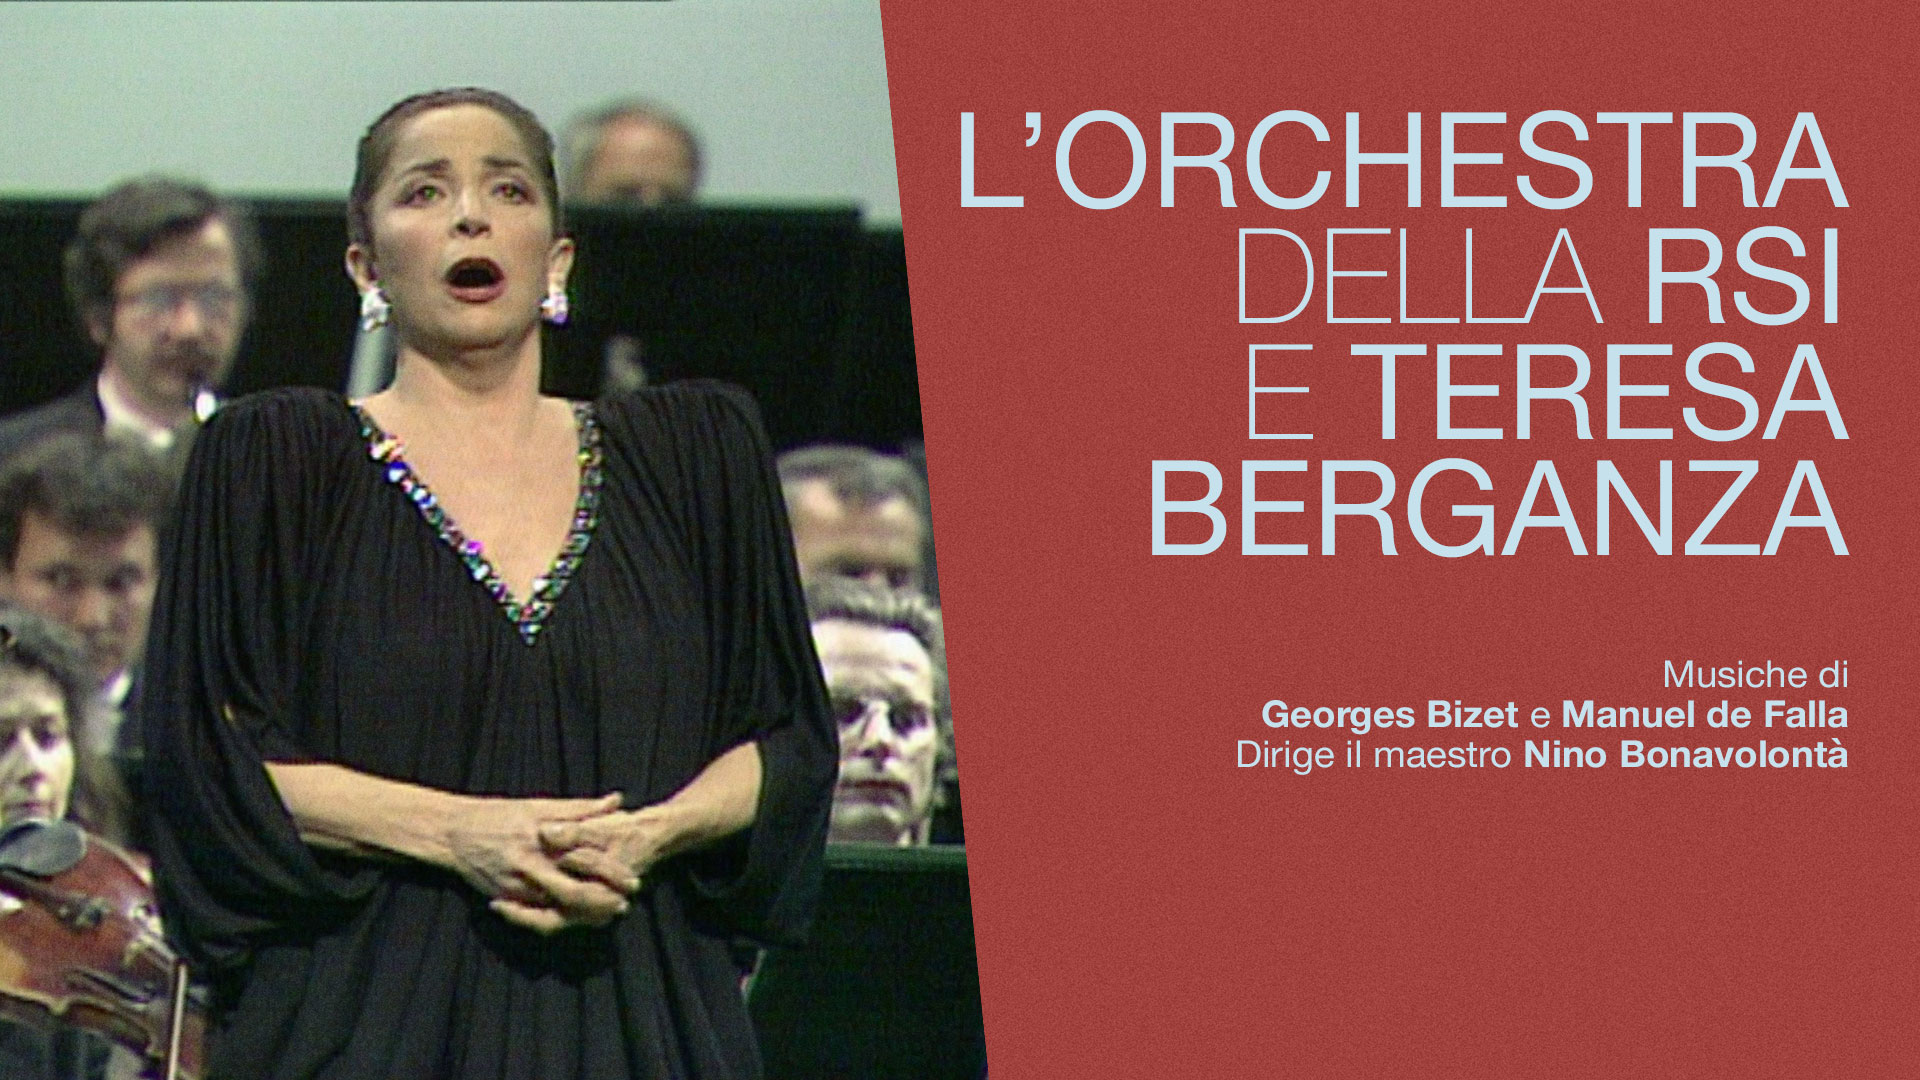 Poster L'orchestra della RSI e Teresa Berganza - Musiche di Georges Bizet e Manuel de Falla